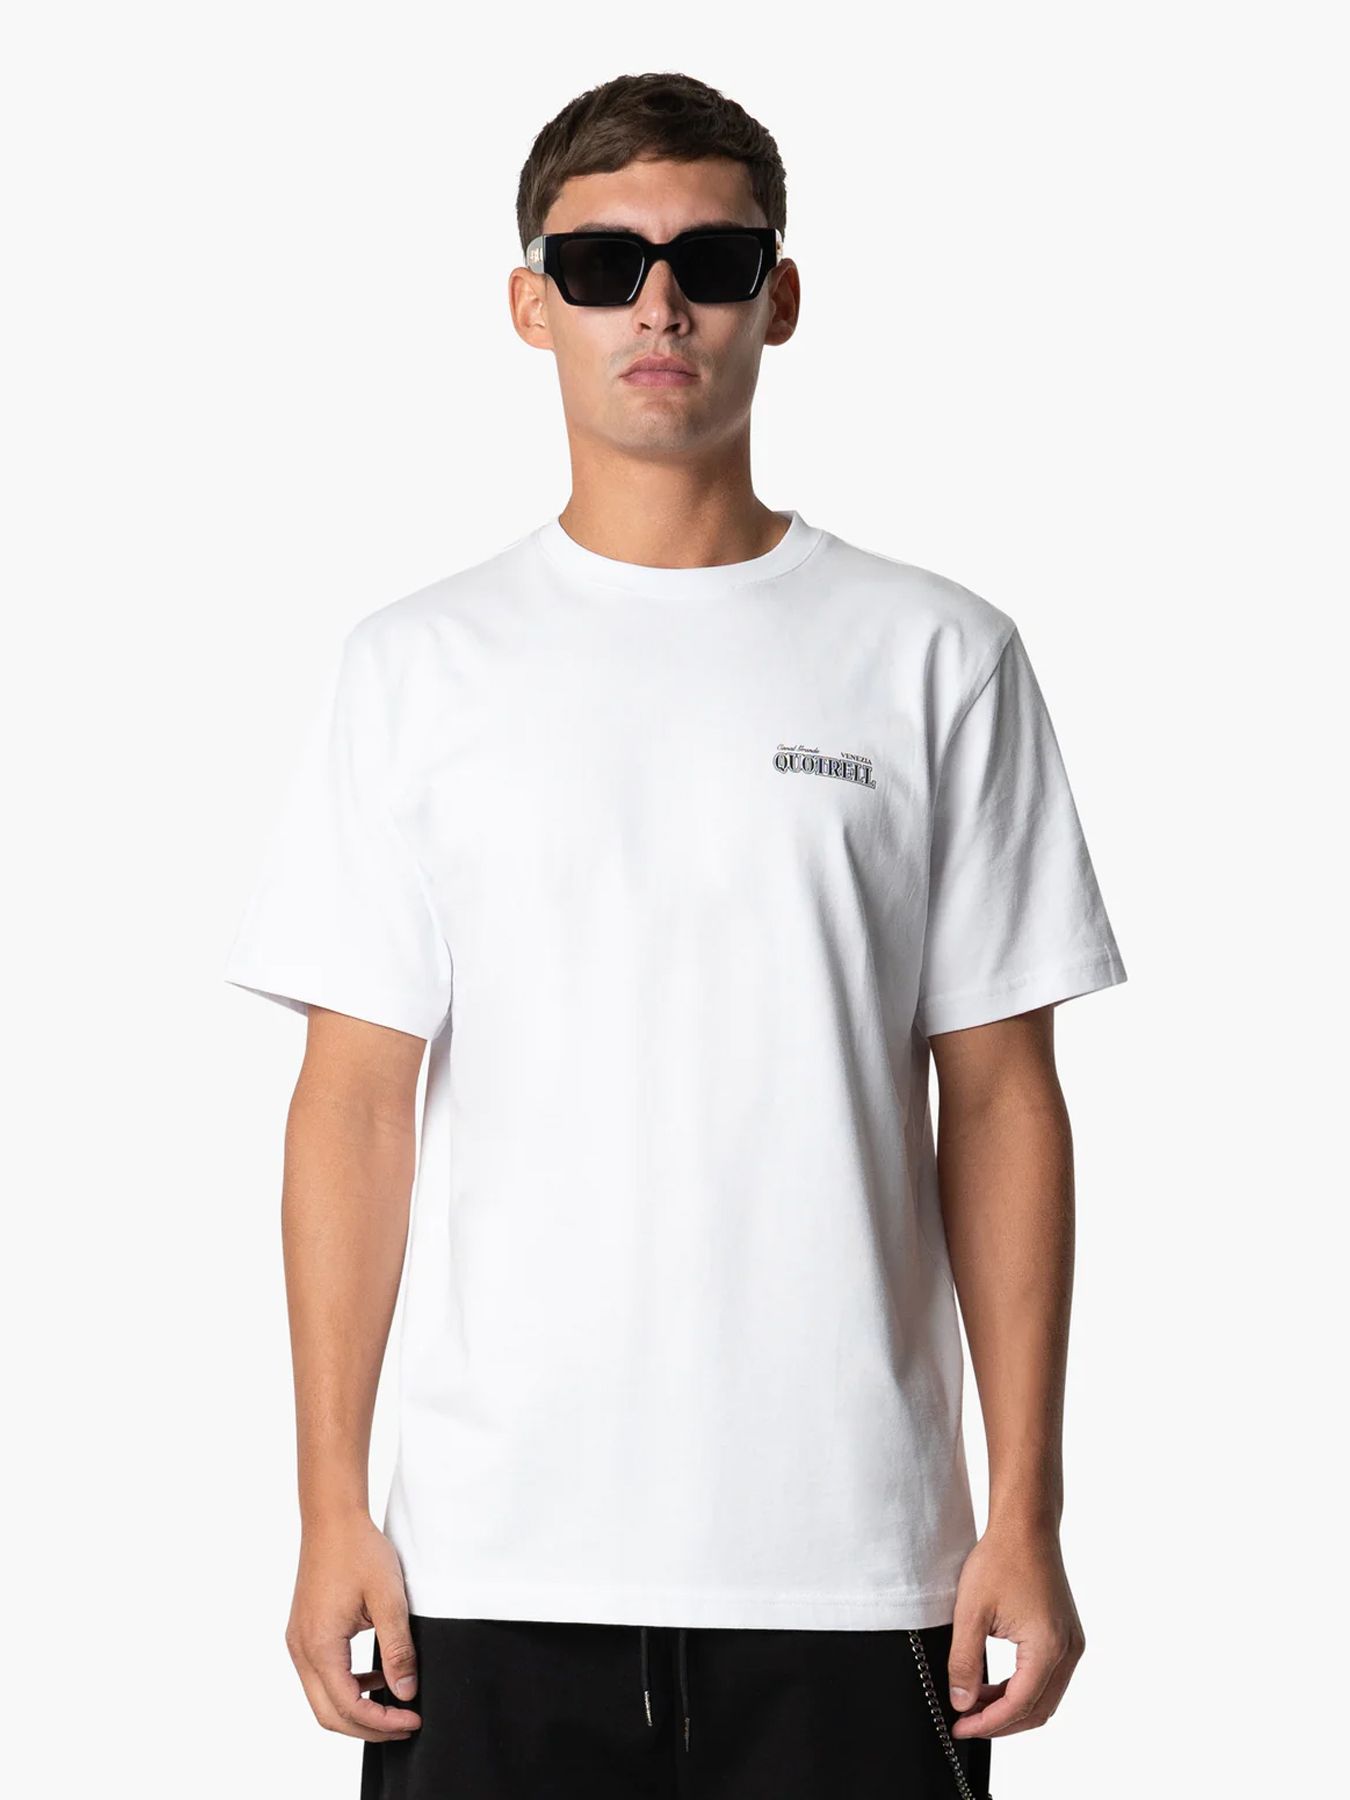 Quotrell Venezia t-shirt White/black 00107930-102